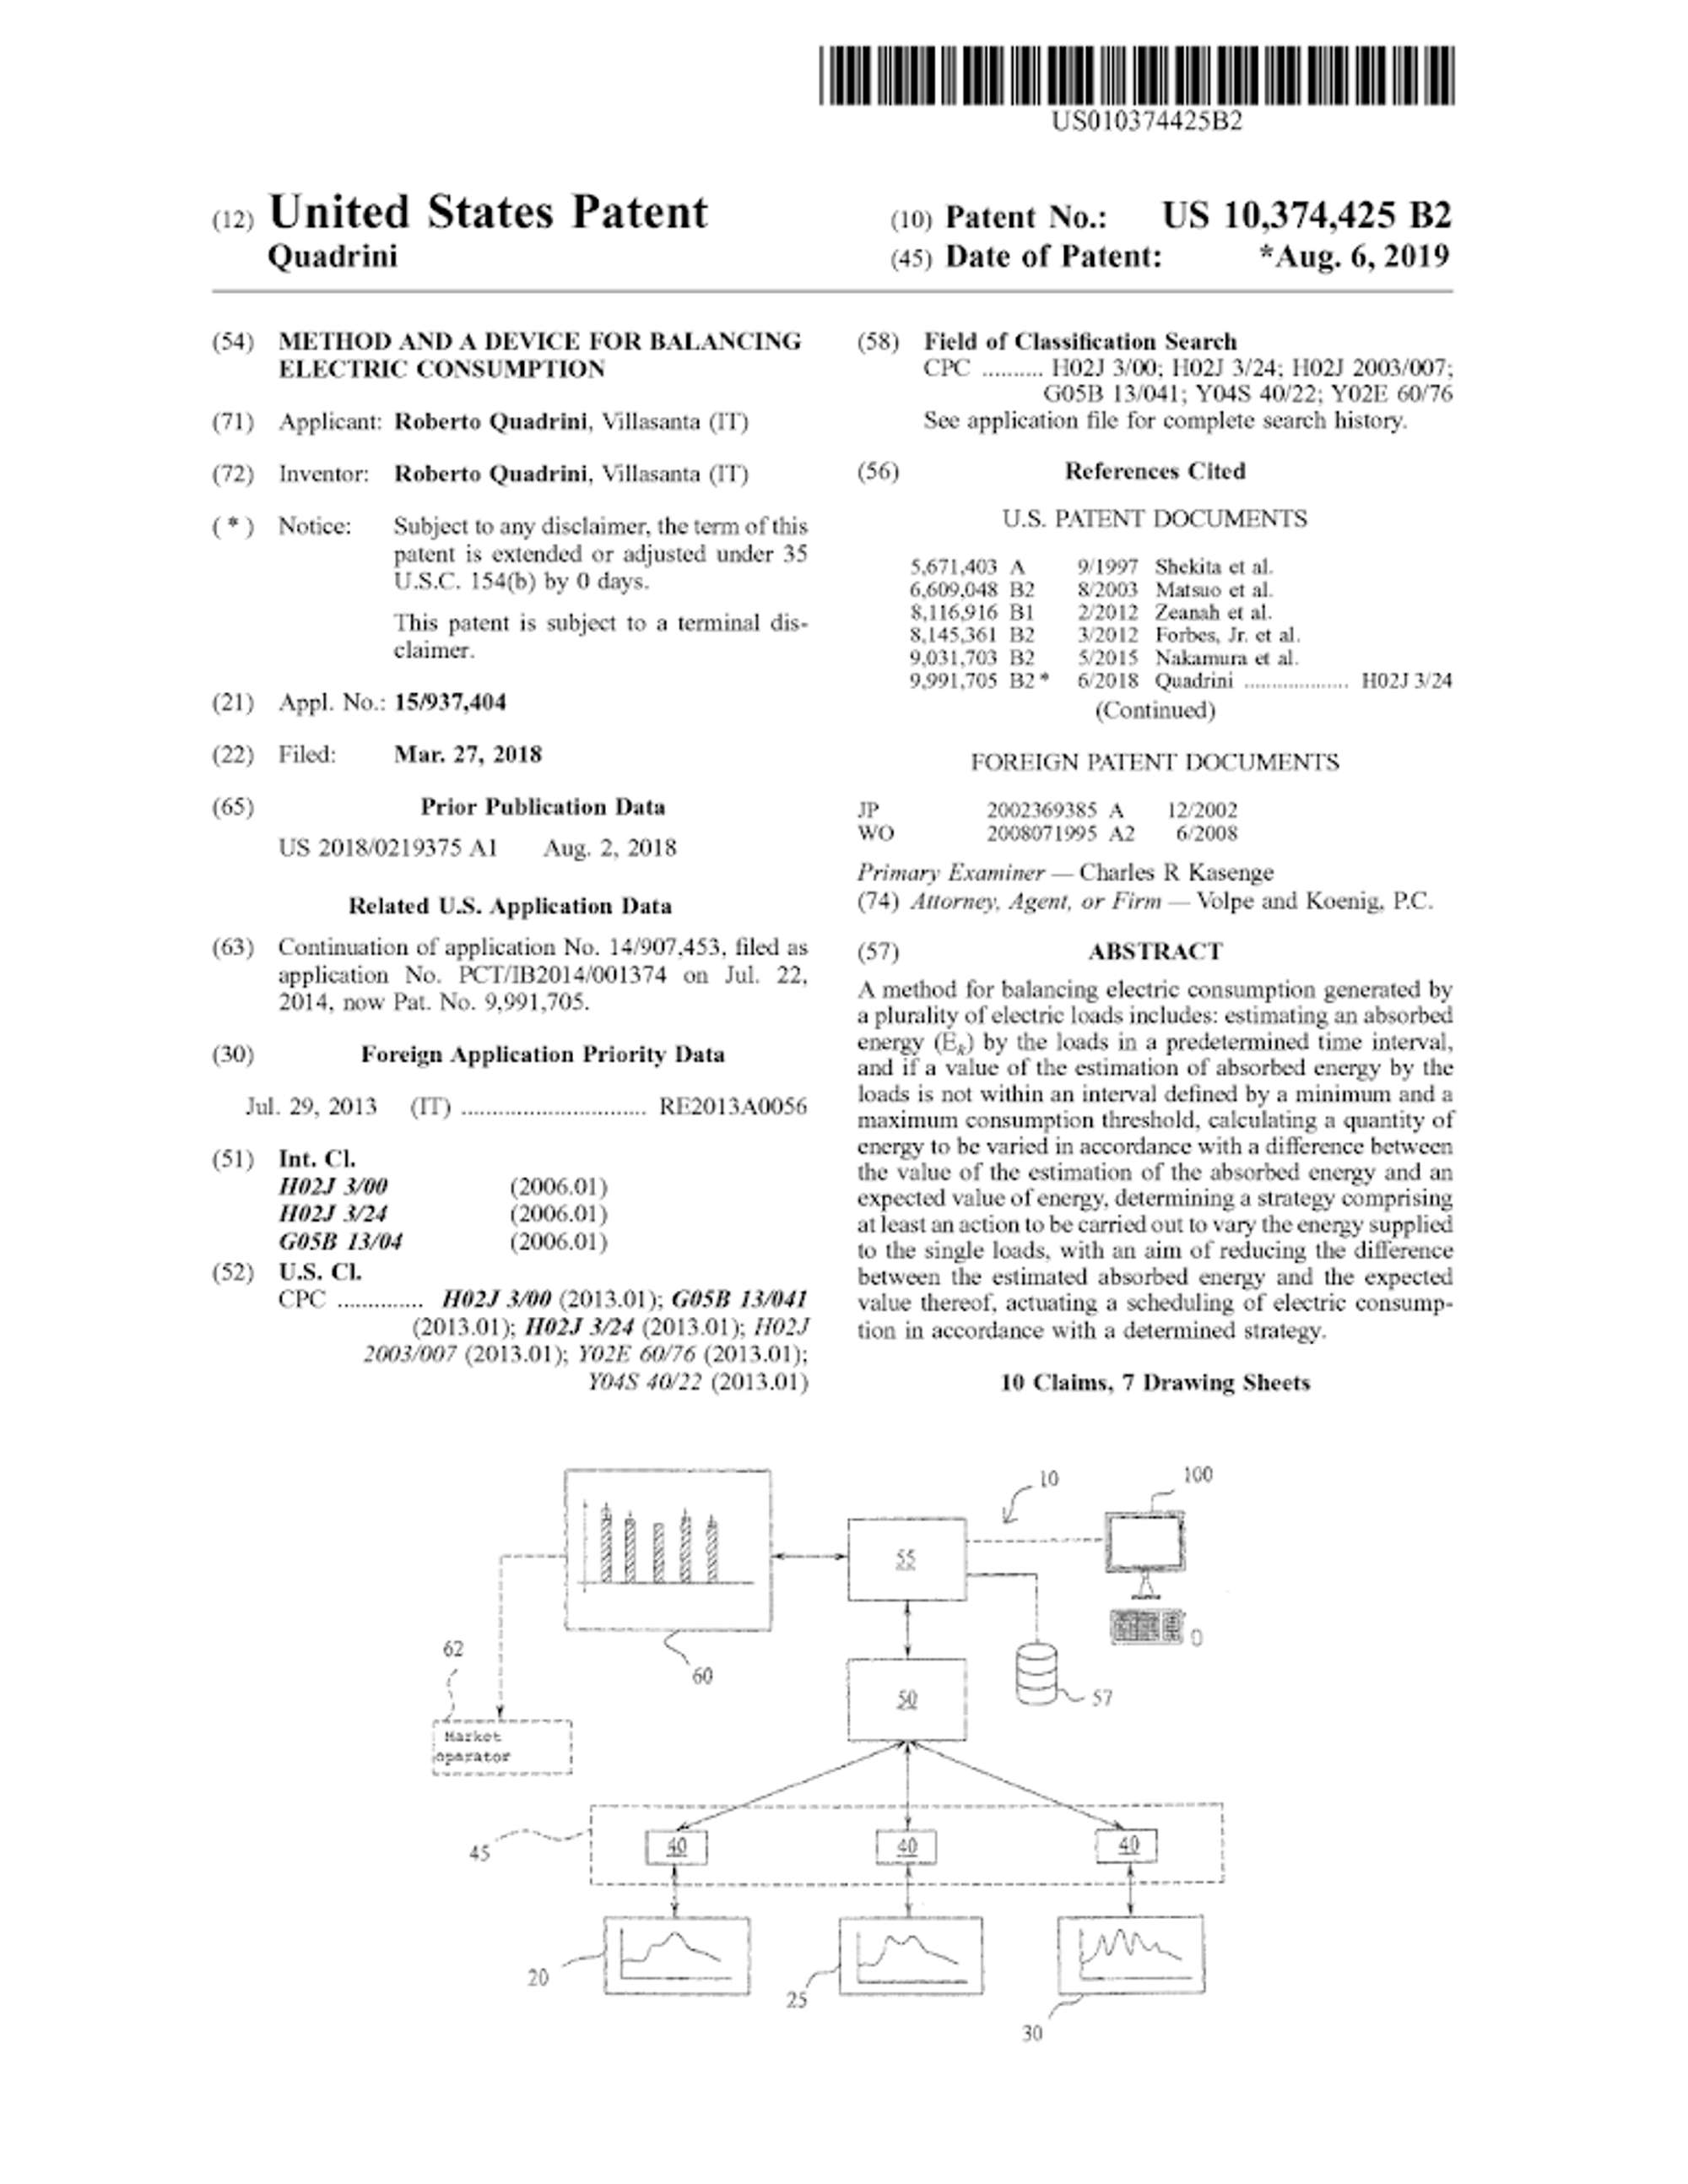 US10374425B2 (Divisional Patent).pdf